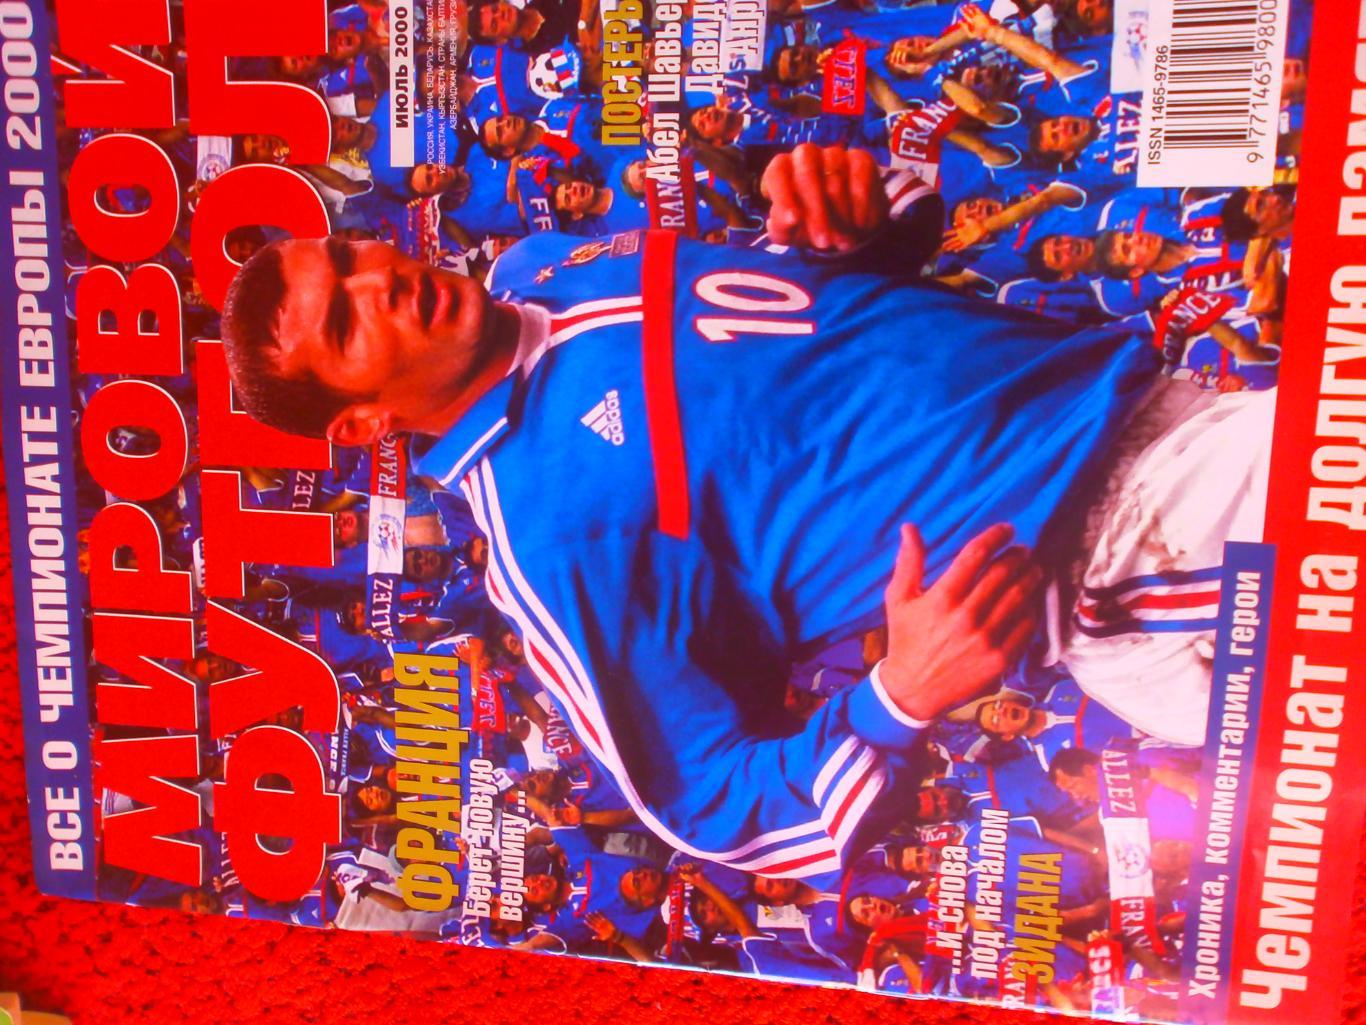 Журнал Мировой футбол июль 2000г. Есть постеры